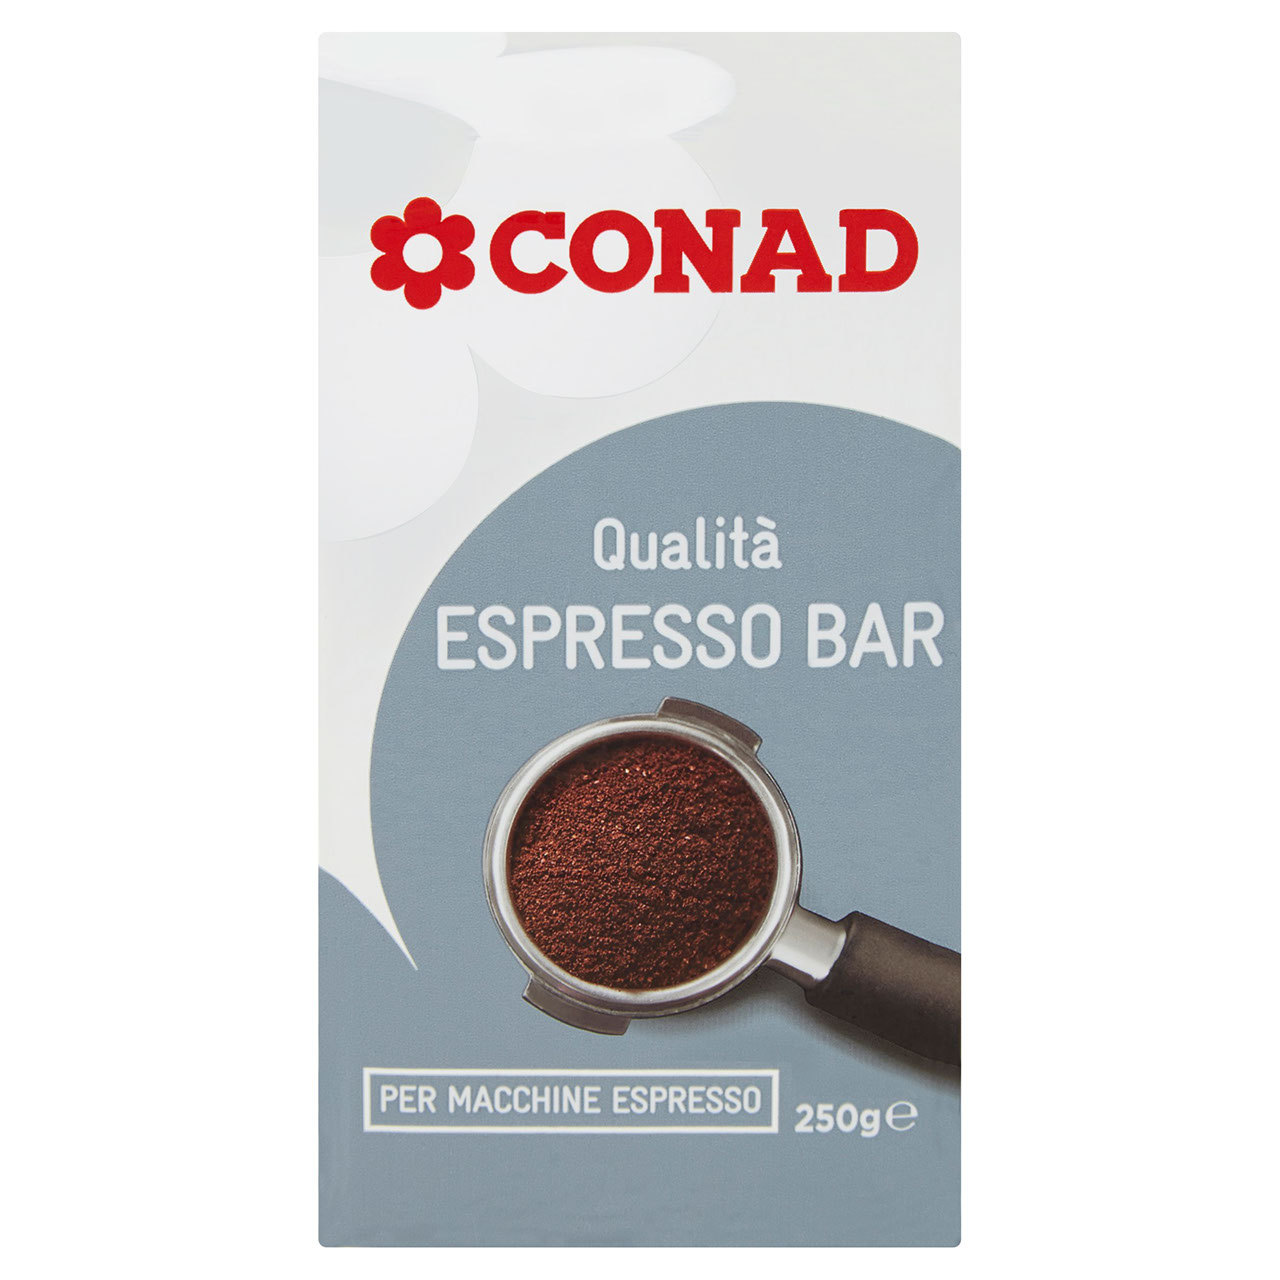 Caffè Qualità Espresso BAR Macchine Espresso Conad | Conad